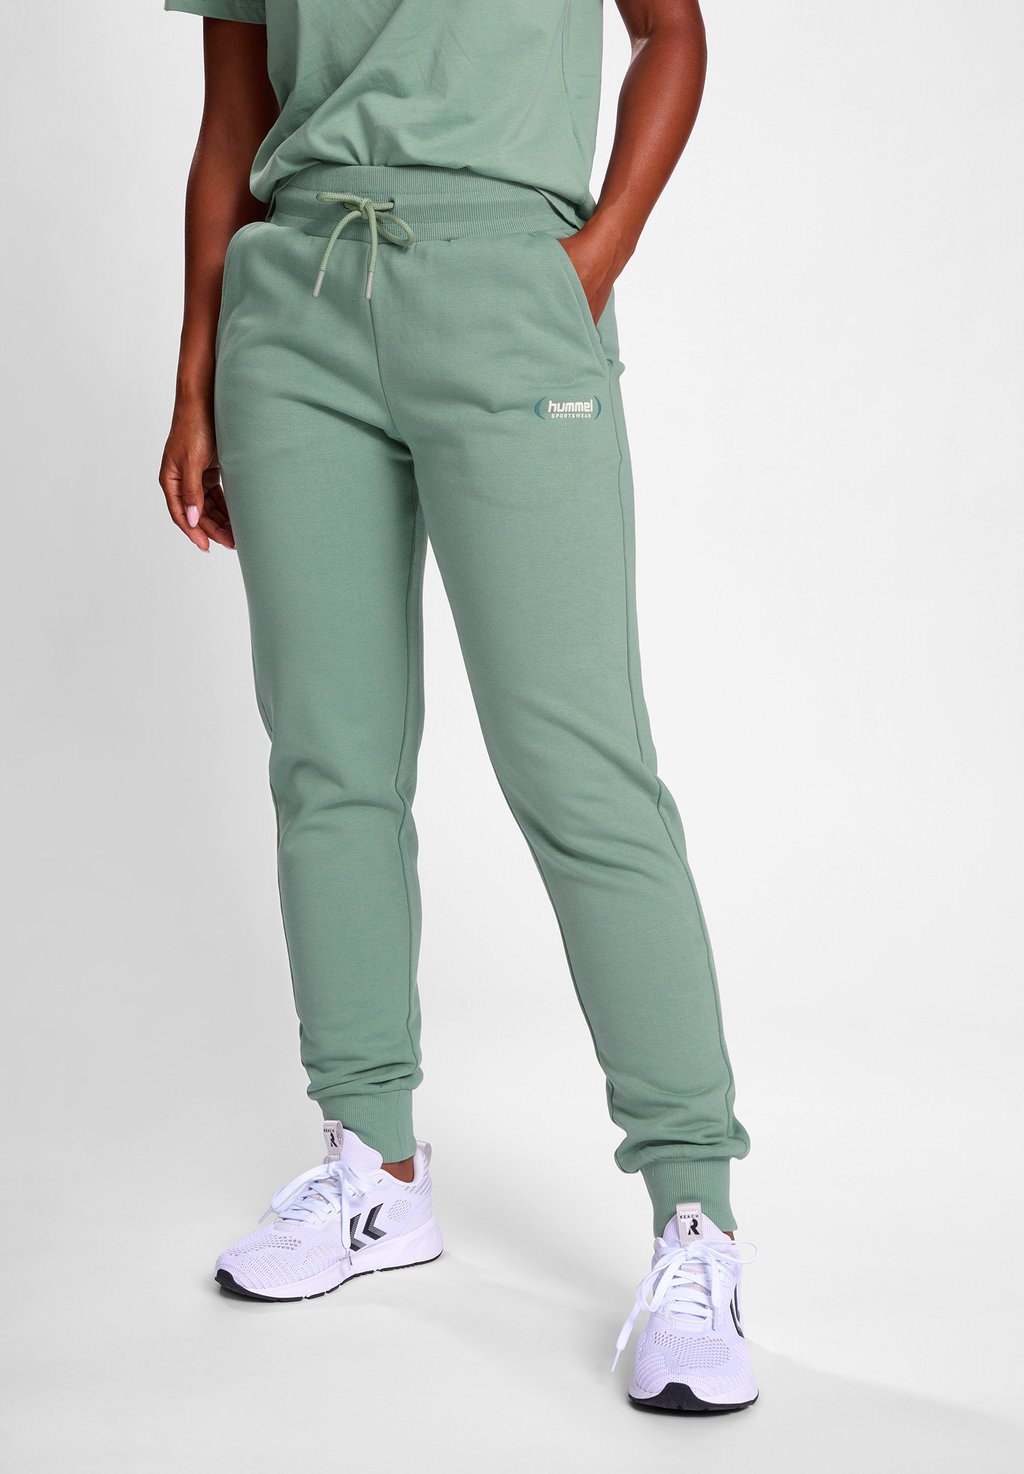 короткие спортивные брюки mejse hummel цвет chinois green Брюки для бега PAOLA Hummel, цвет chinois green